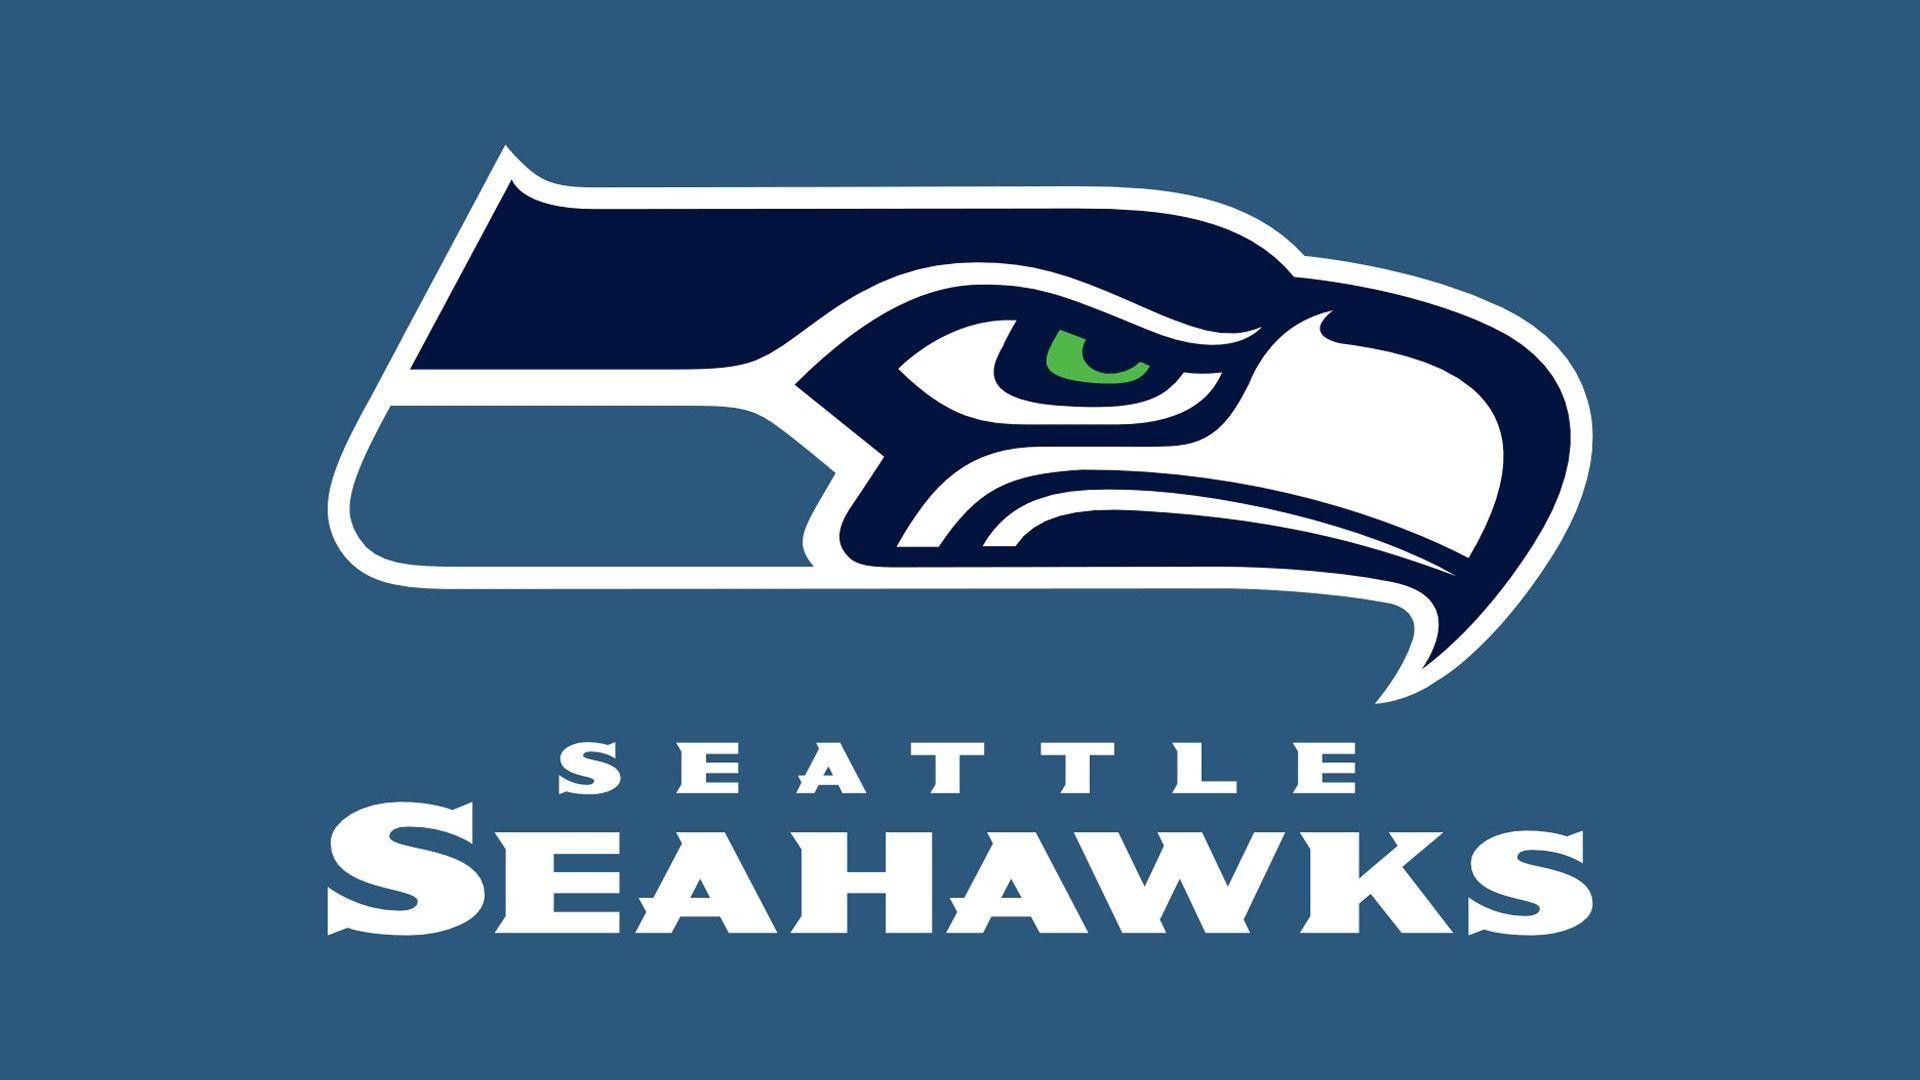 NFL Team Seattle Seahawks Wallpaper 63511 Wallpaper Cool